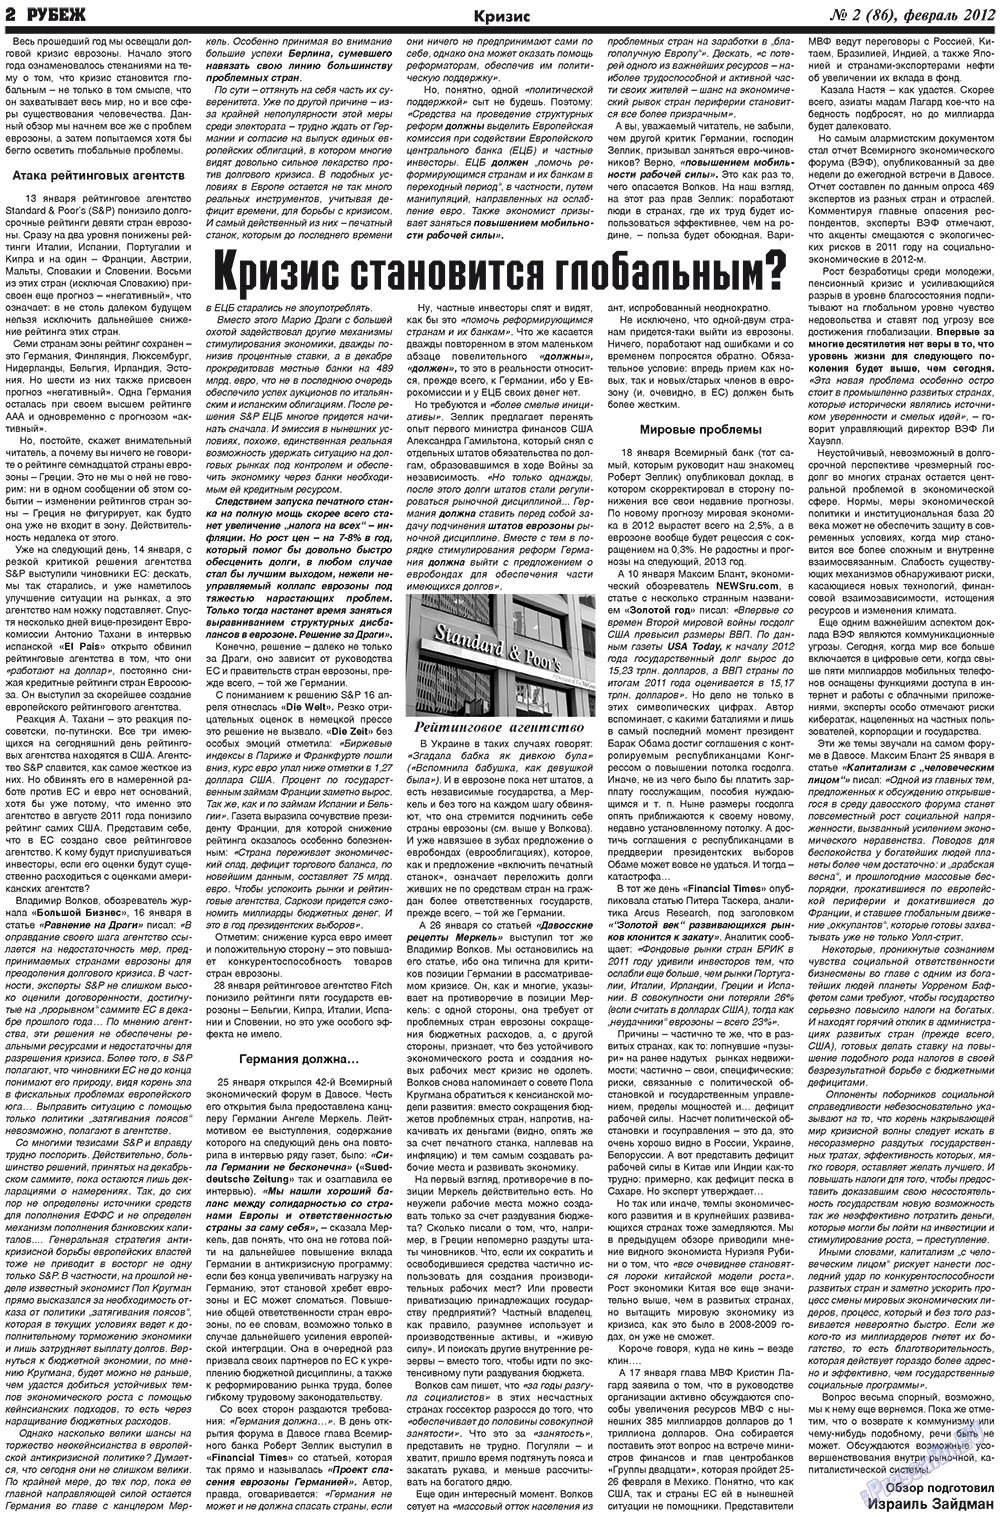 Рубеж (газета). 2012 год, номер 2, стр. 2